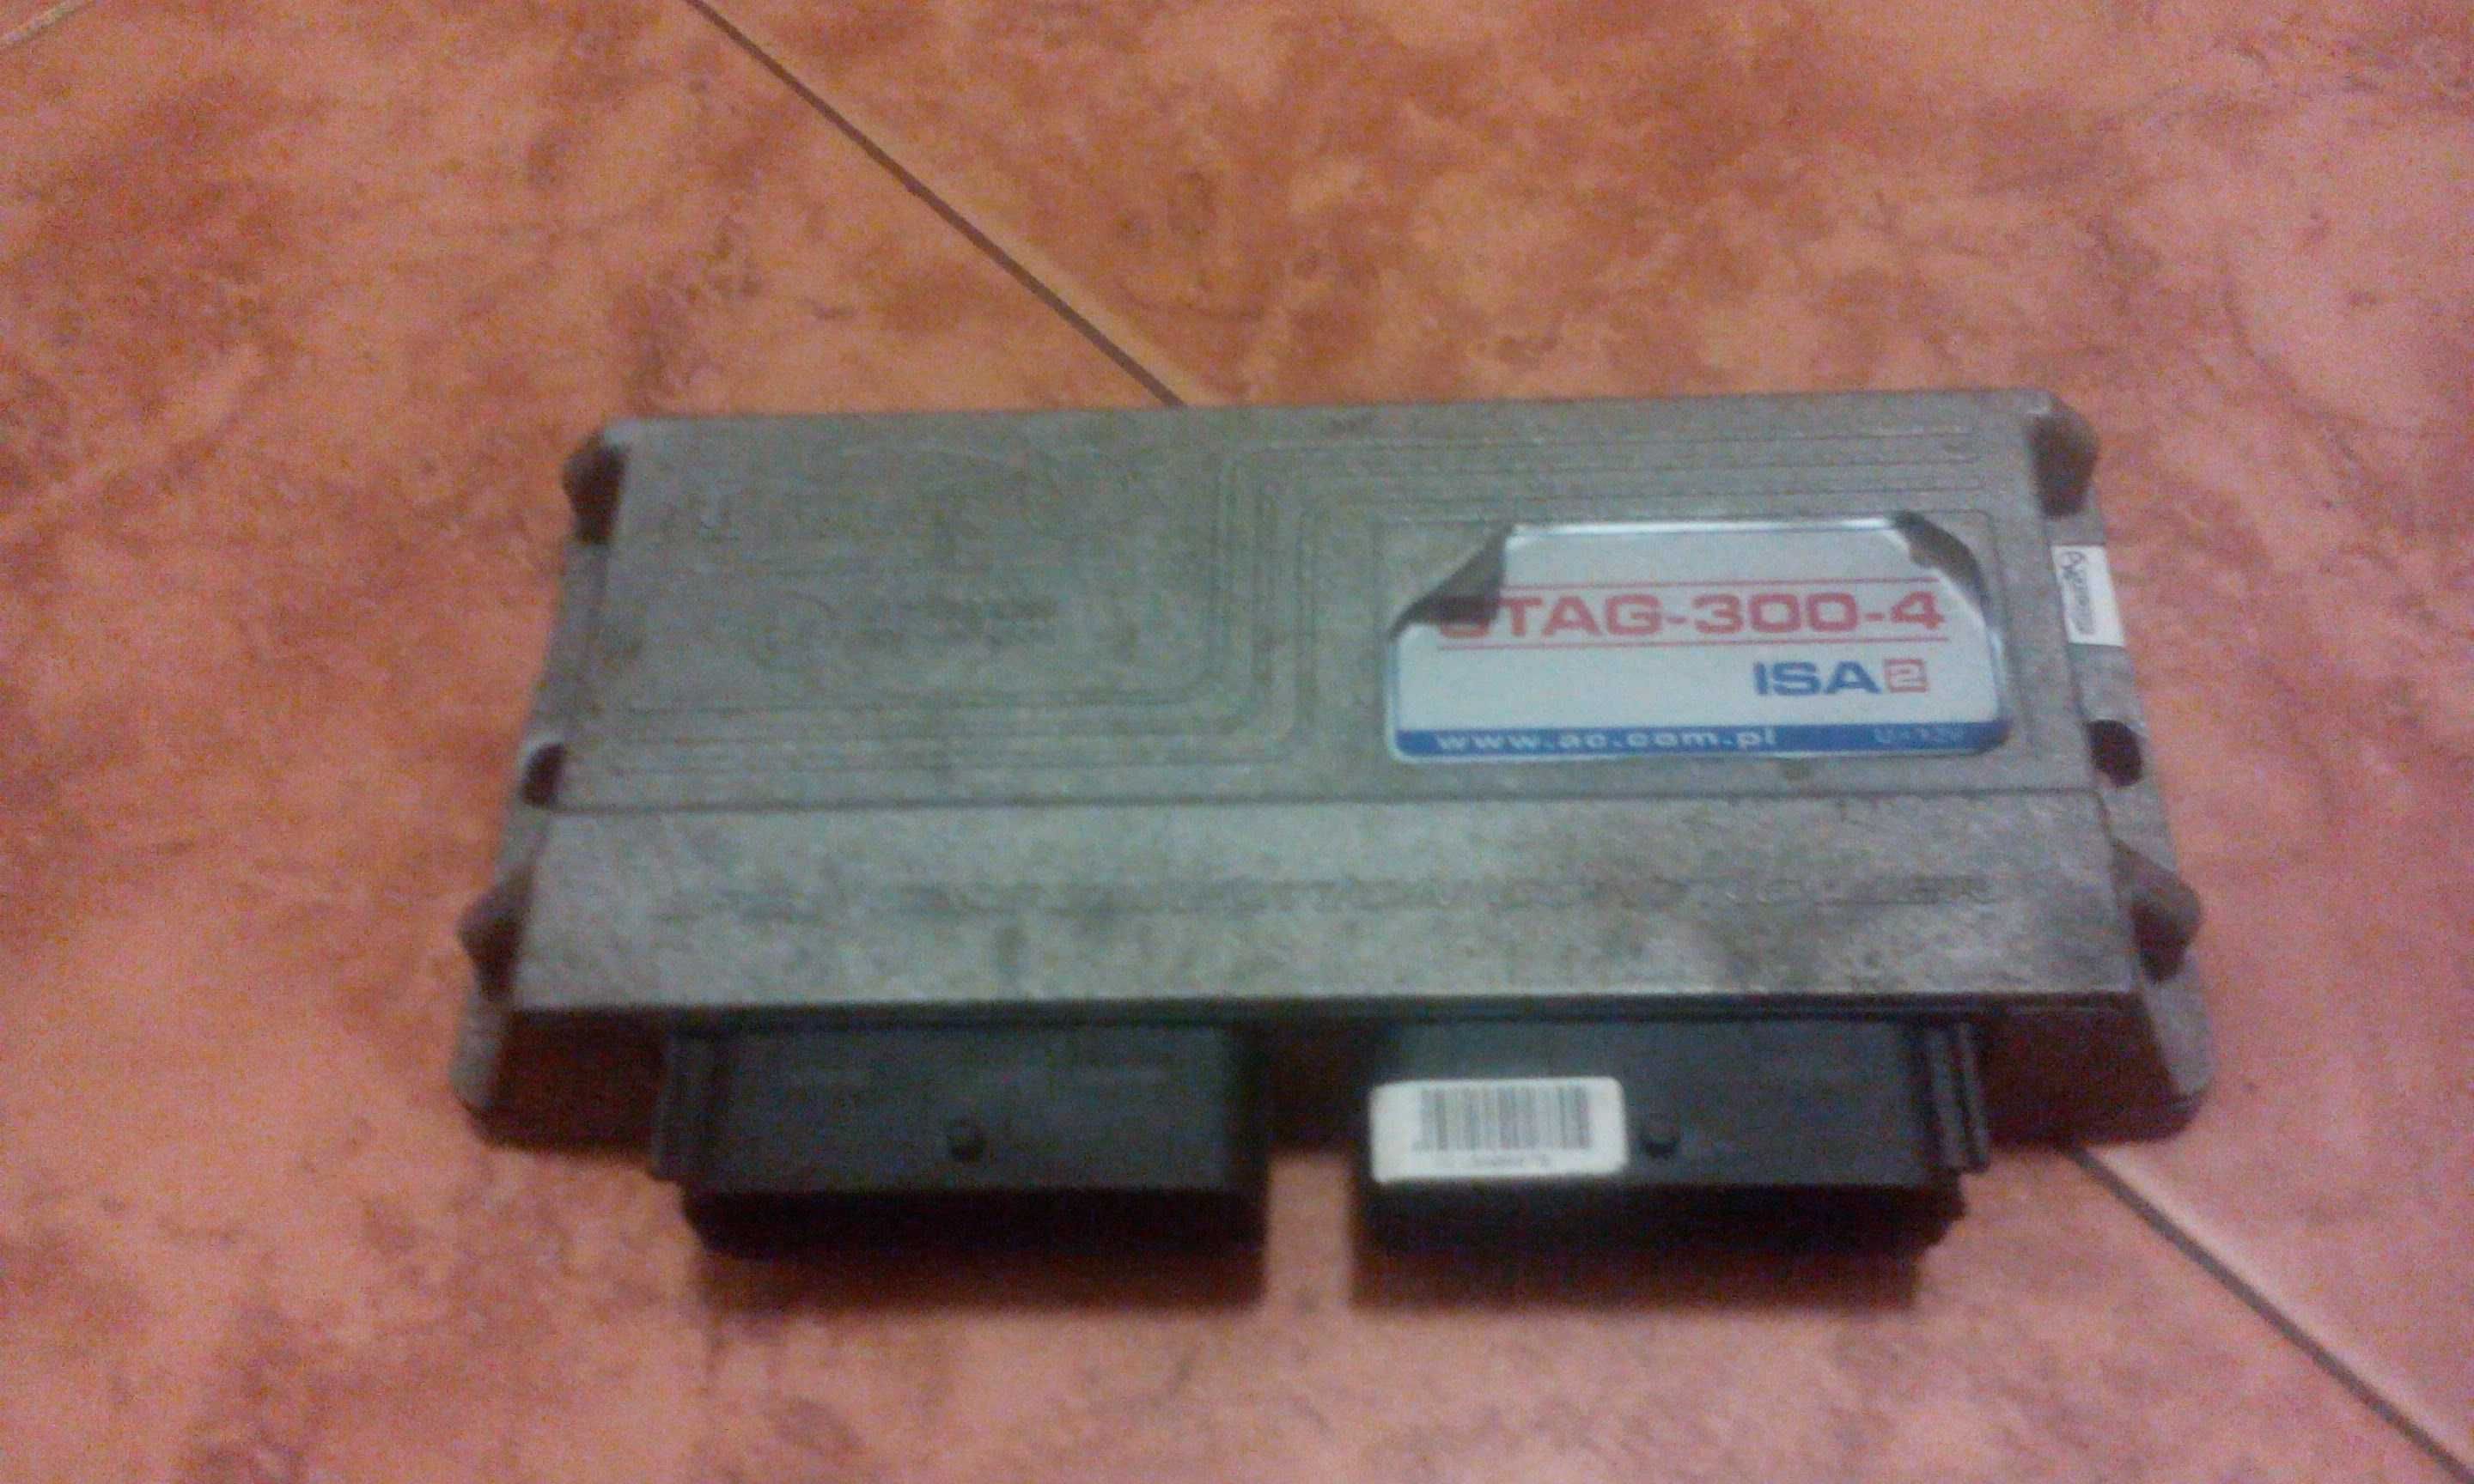 Stag 300-4 ISA2 sterownik komputer LPG